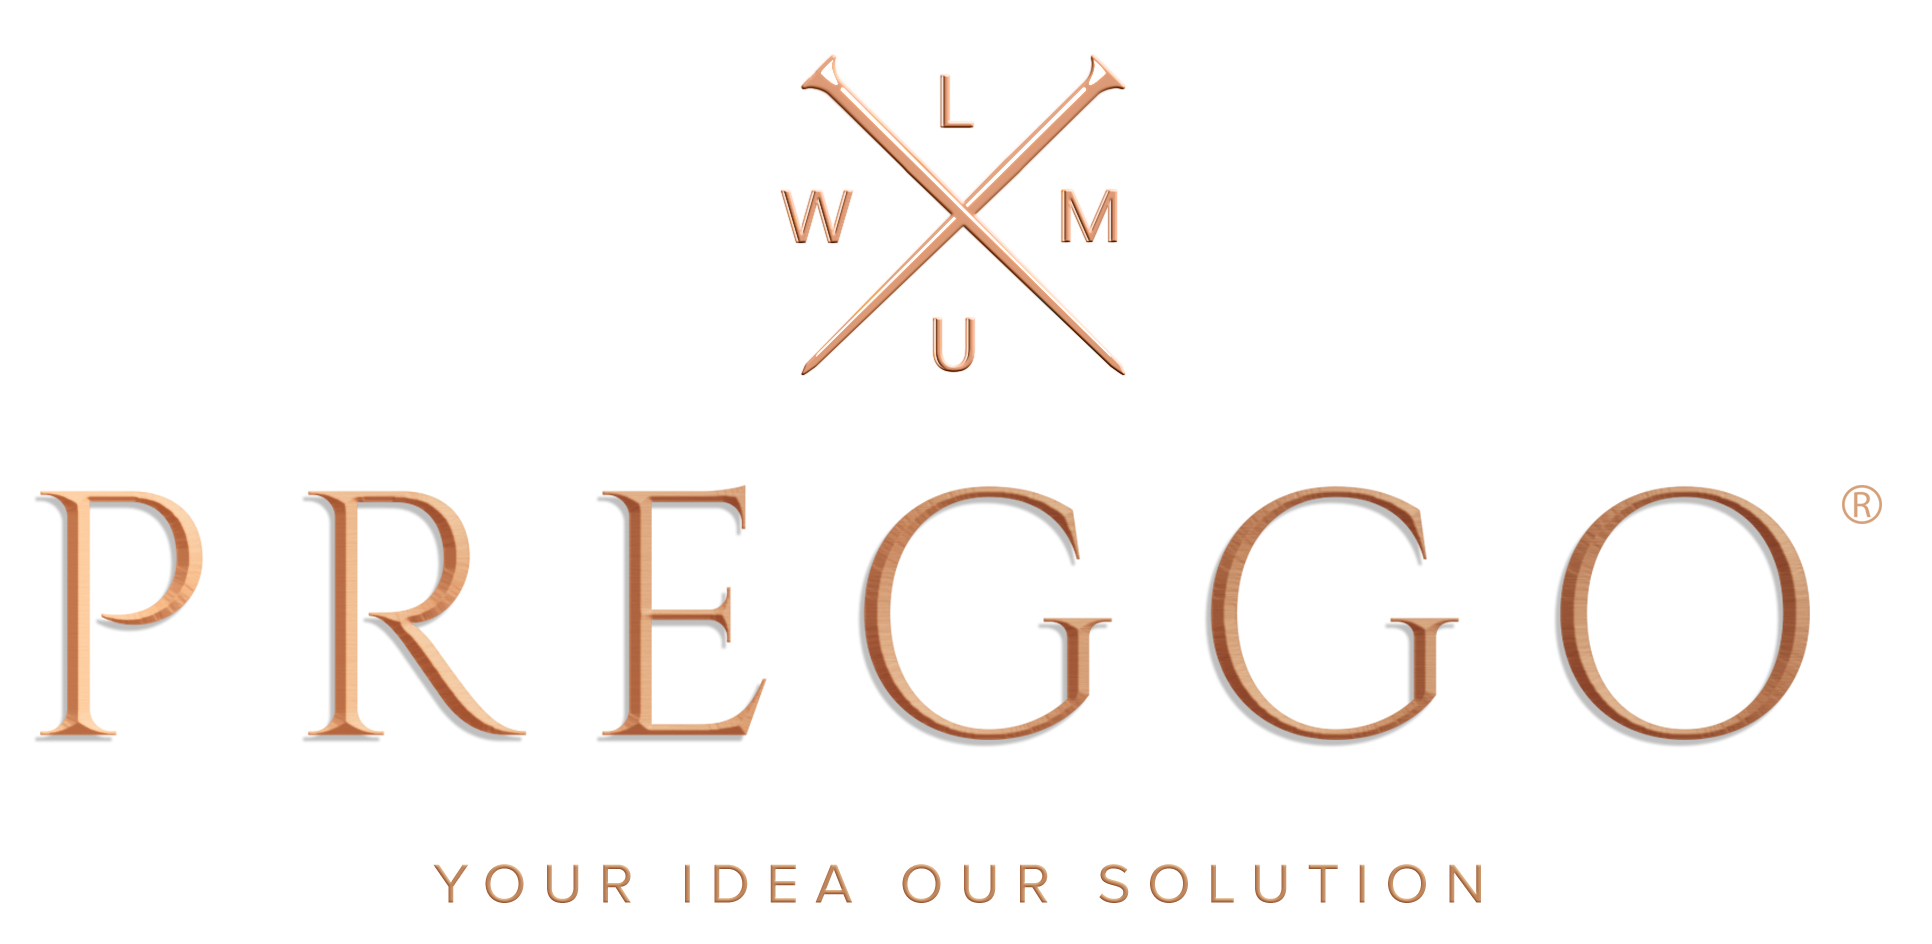 Preggo Your Idea our solution